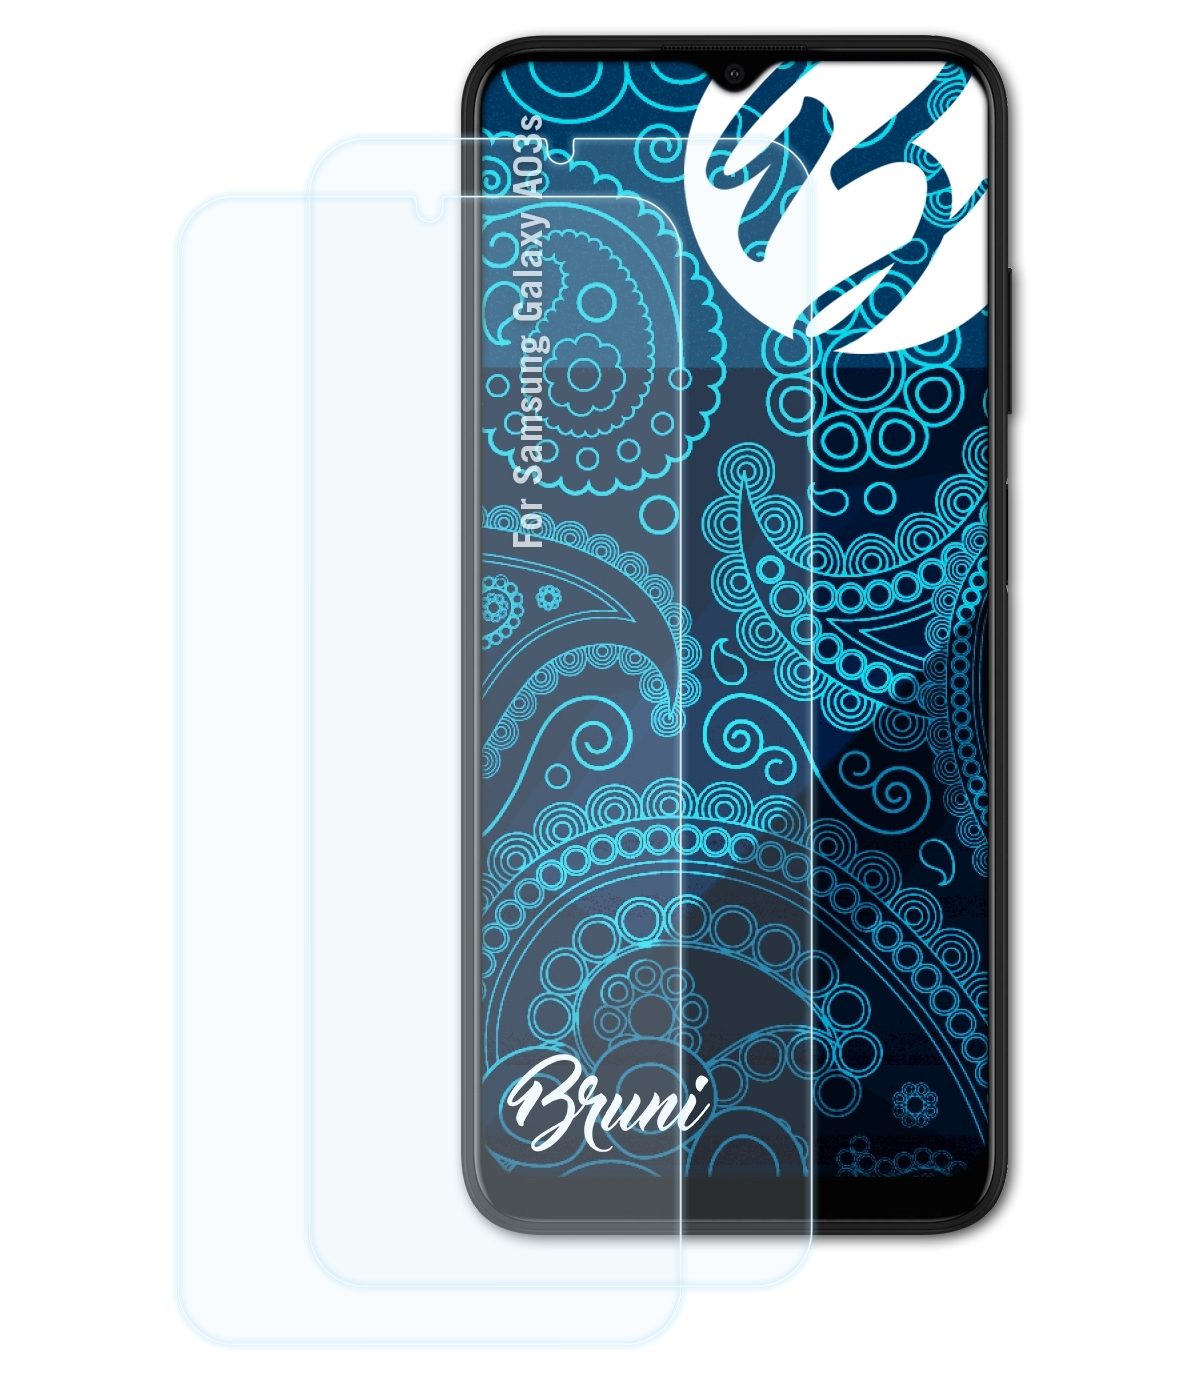 BRUNI Galaxy Samsung A03s) Basics-Clear 2x Schutzfolie(für